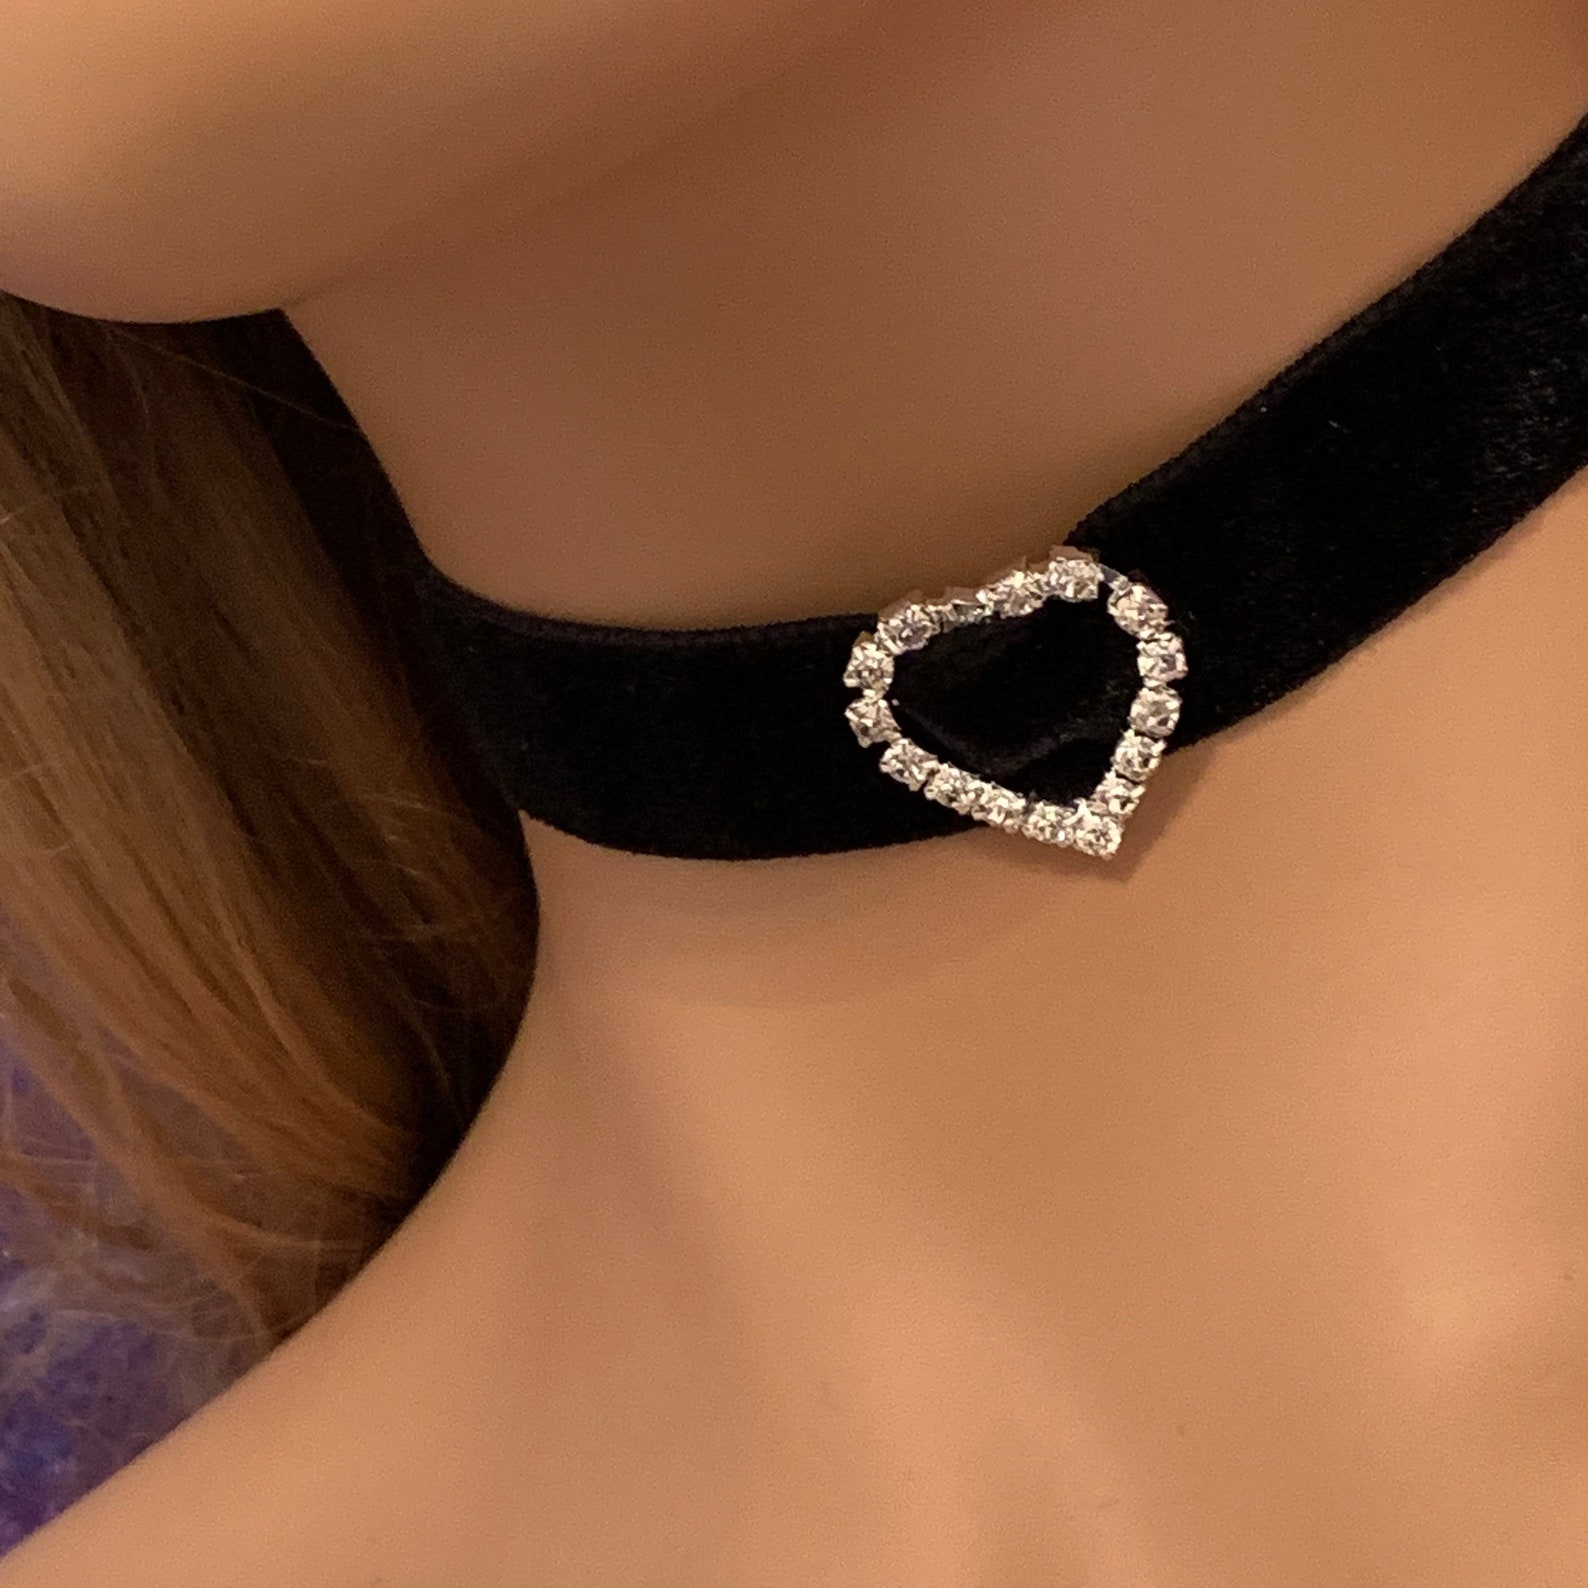 2cm Black Velvet Choker Necklace With Diamante Heart Charm Uk Etsy